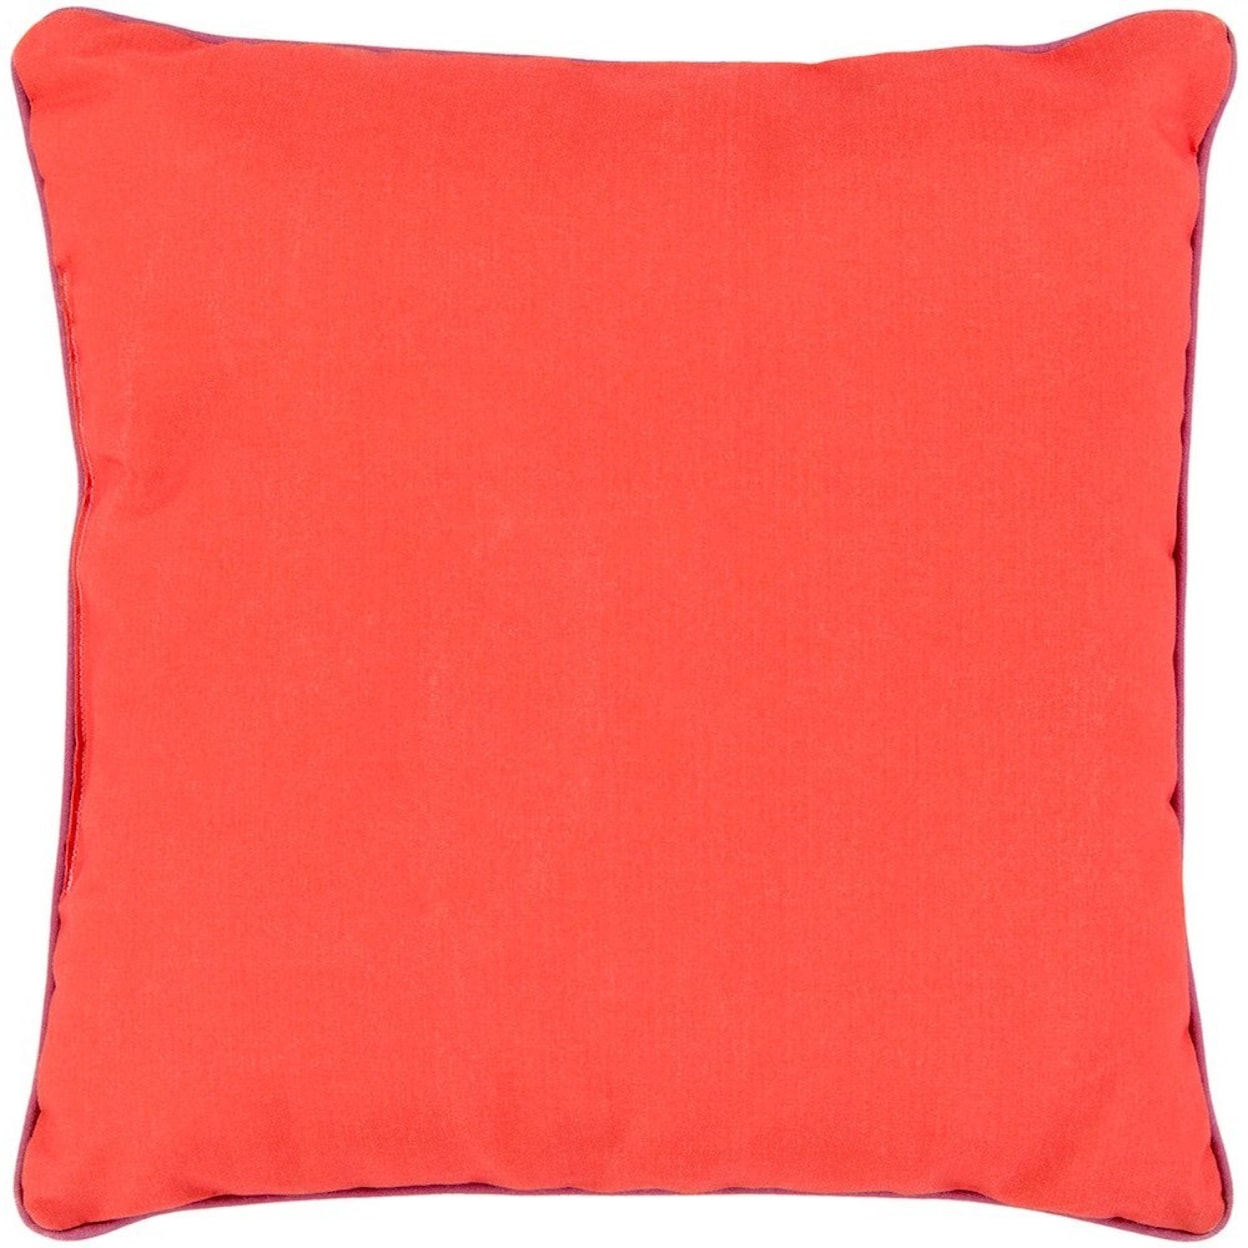 Surya Bahari 16 x 16 x 4 Polyester Throw Pillow